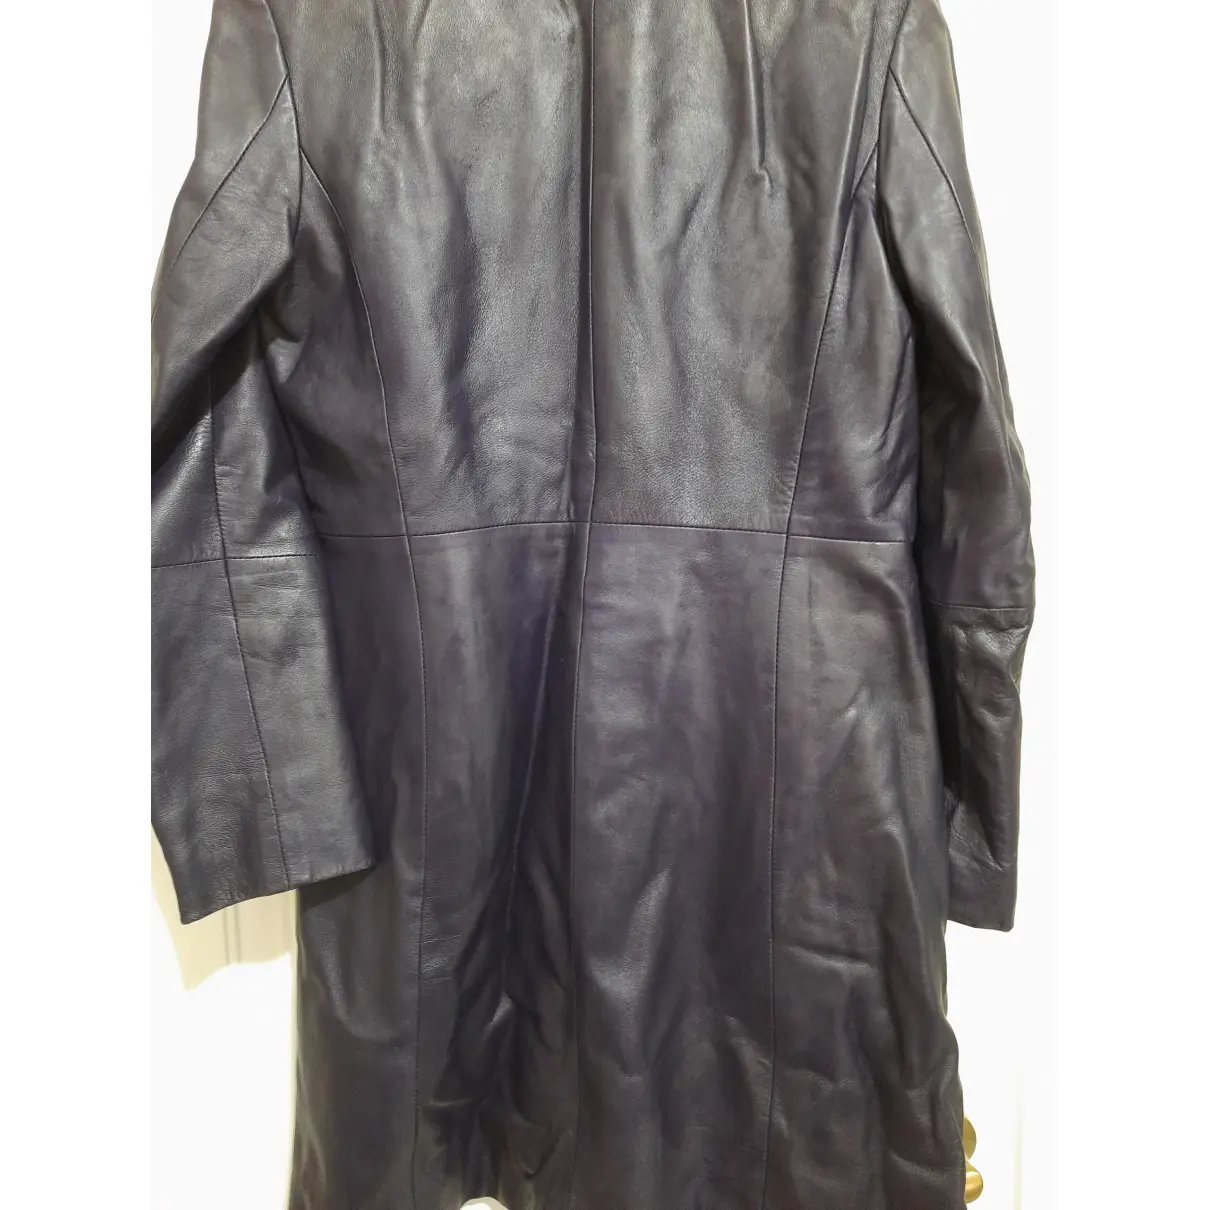 Buy CONBIPEL Leather coat online